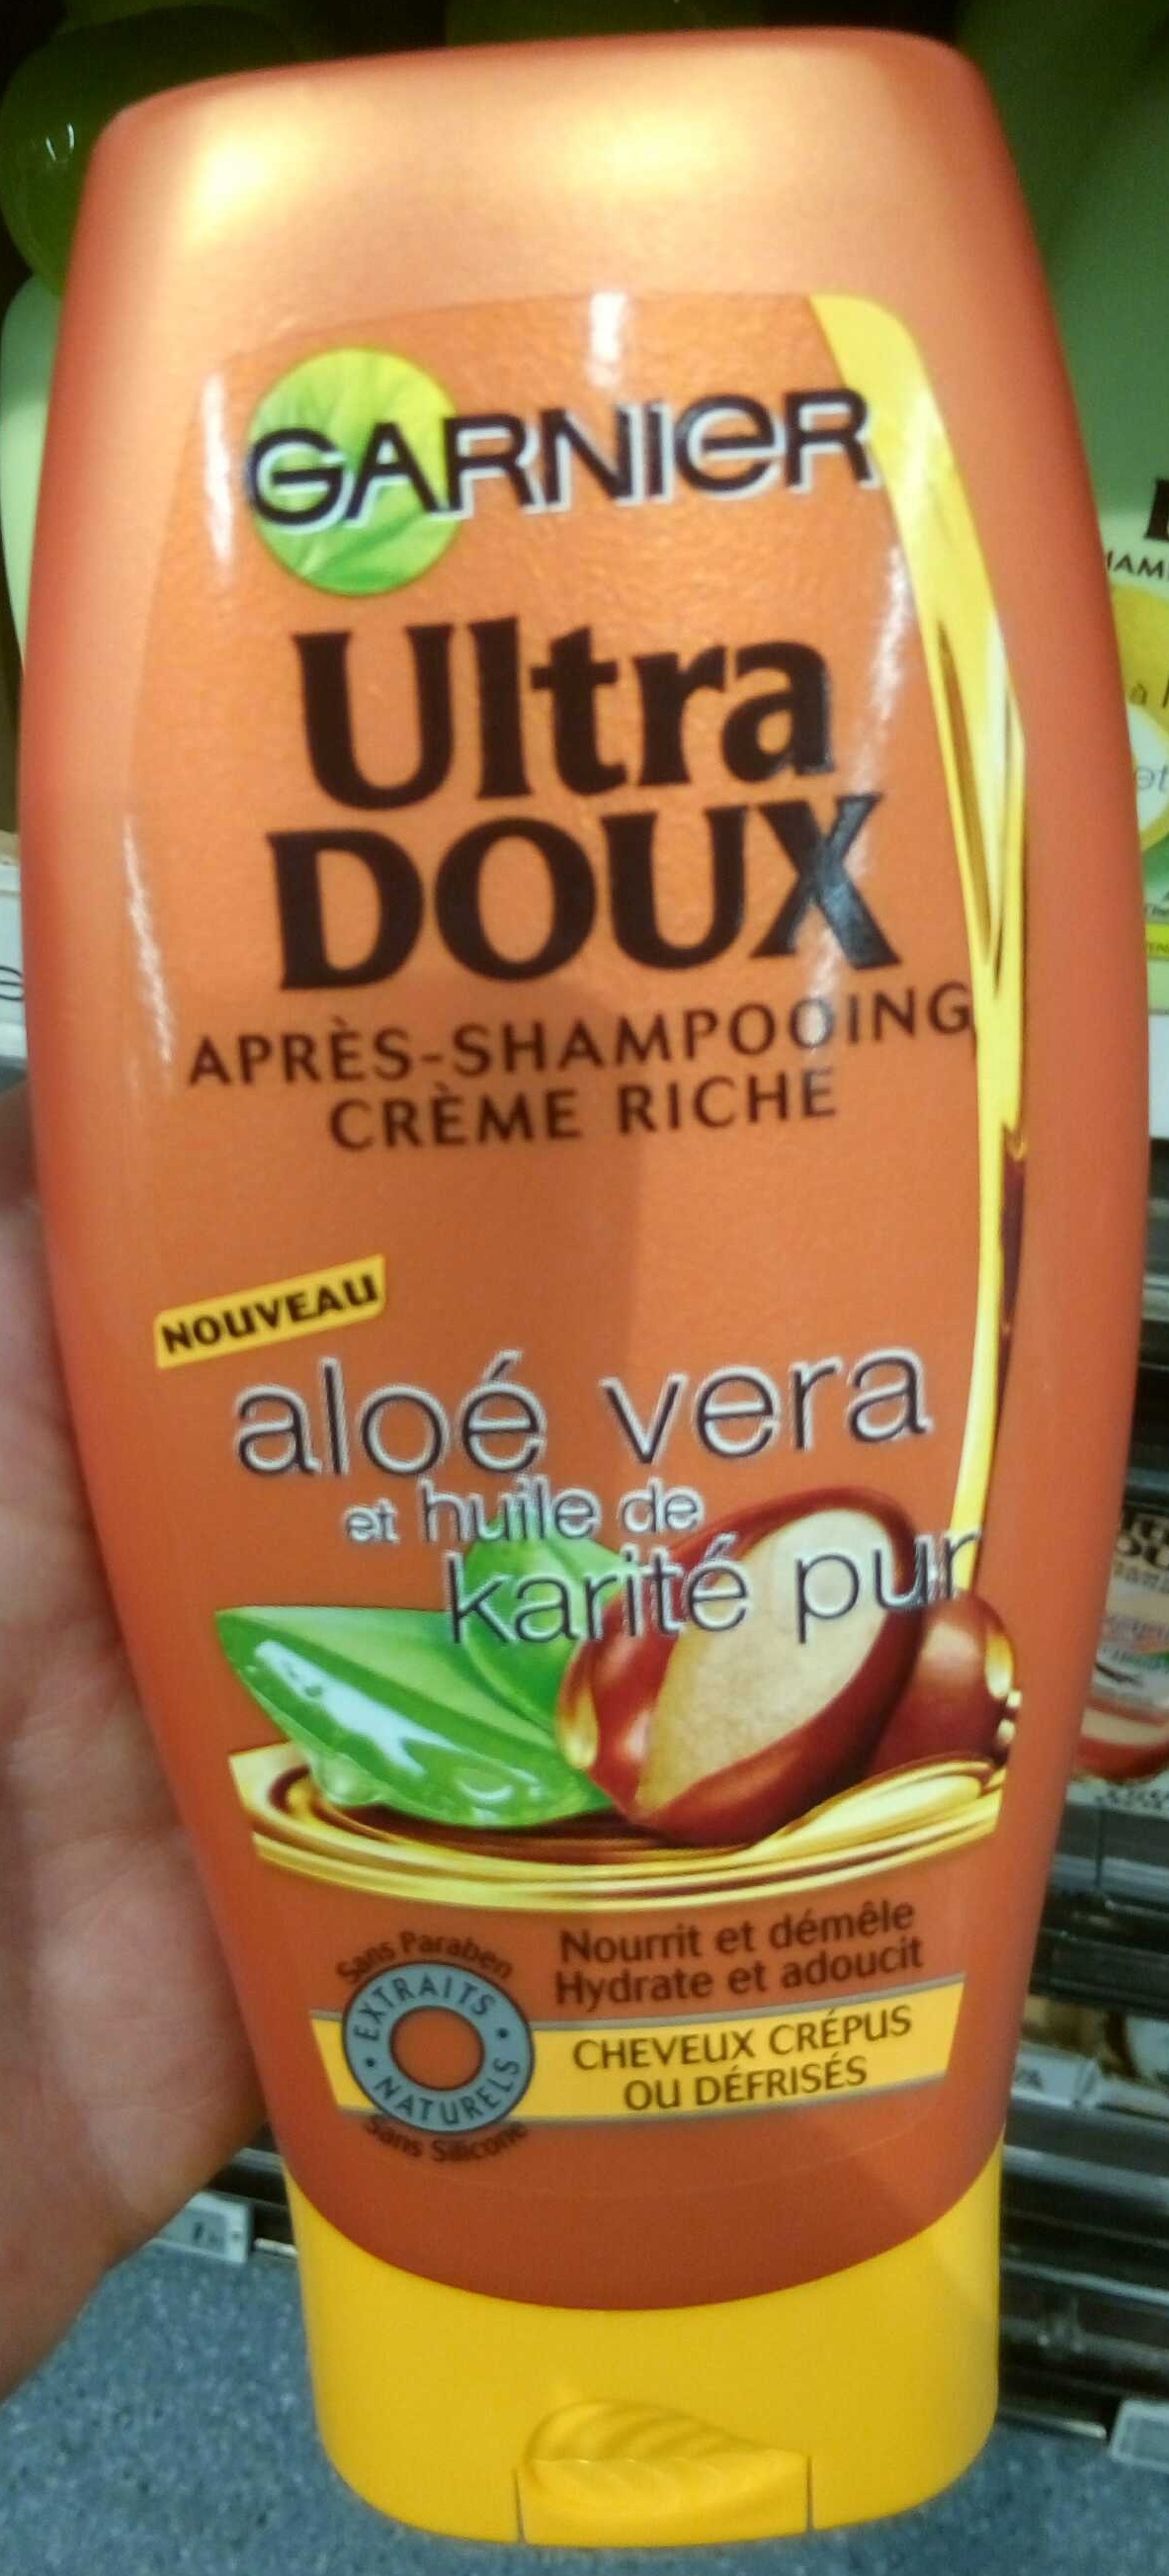 Ultra Doux Après-shampooing crème riche Aloé vera et huile de karité pur - Produto - fr